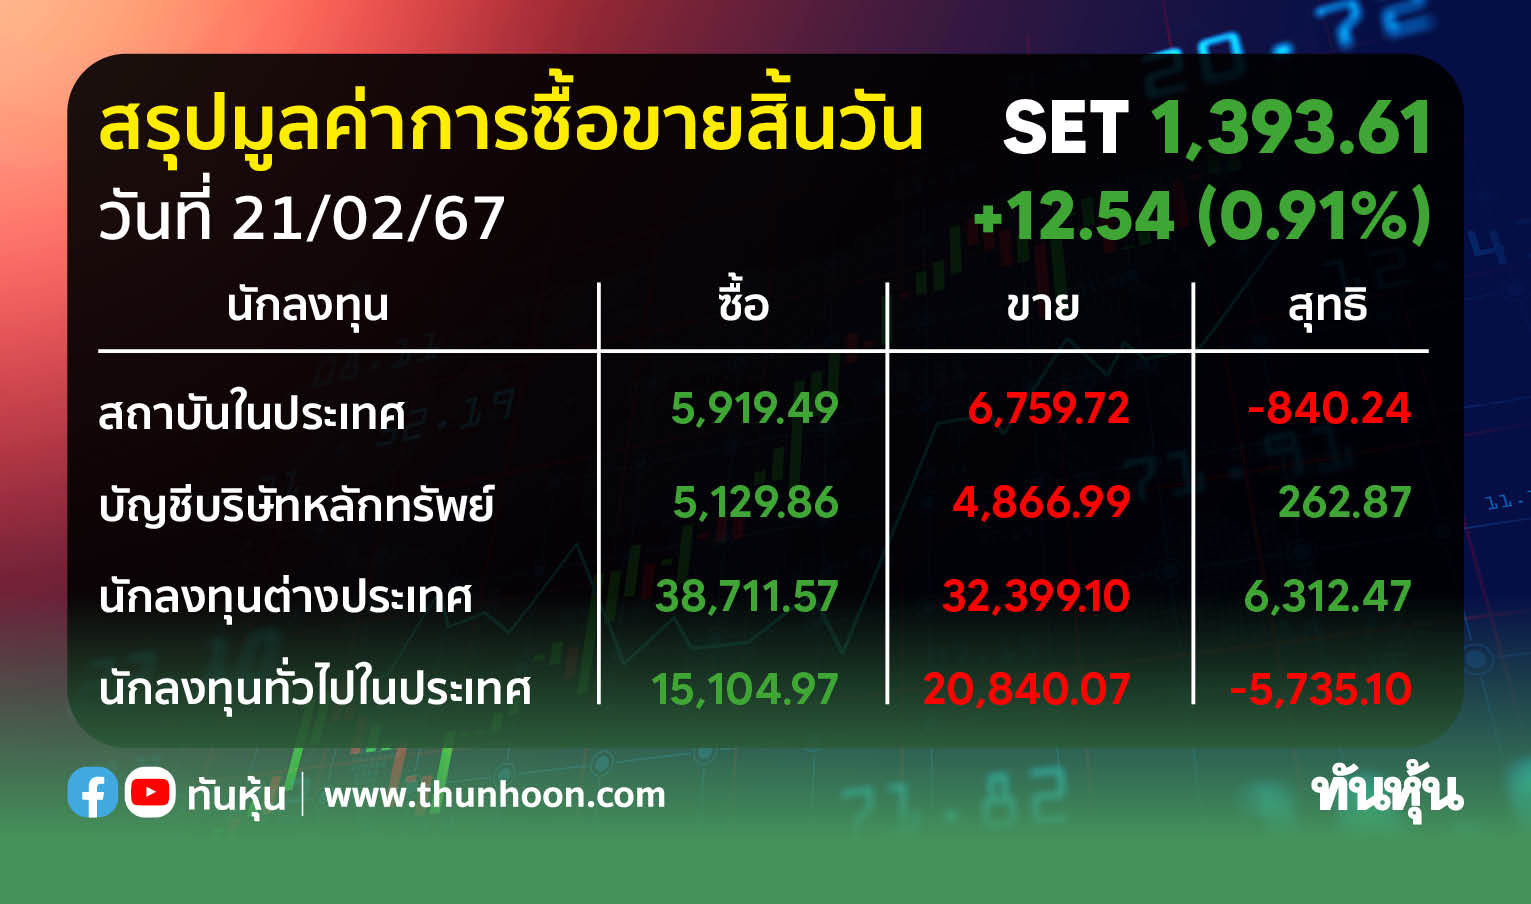 ต่างชาติกลับมาซื้อหุ้นไทย 6,312.47 ลบ. สถาบัน-รายย่อยขายทำกำไร